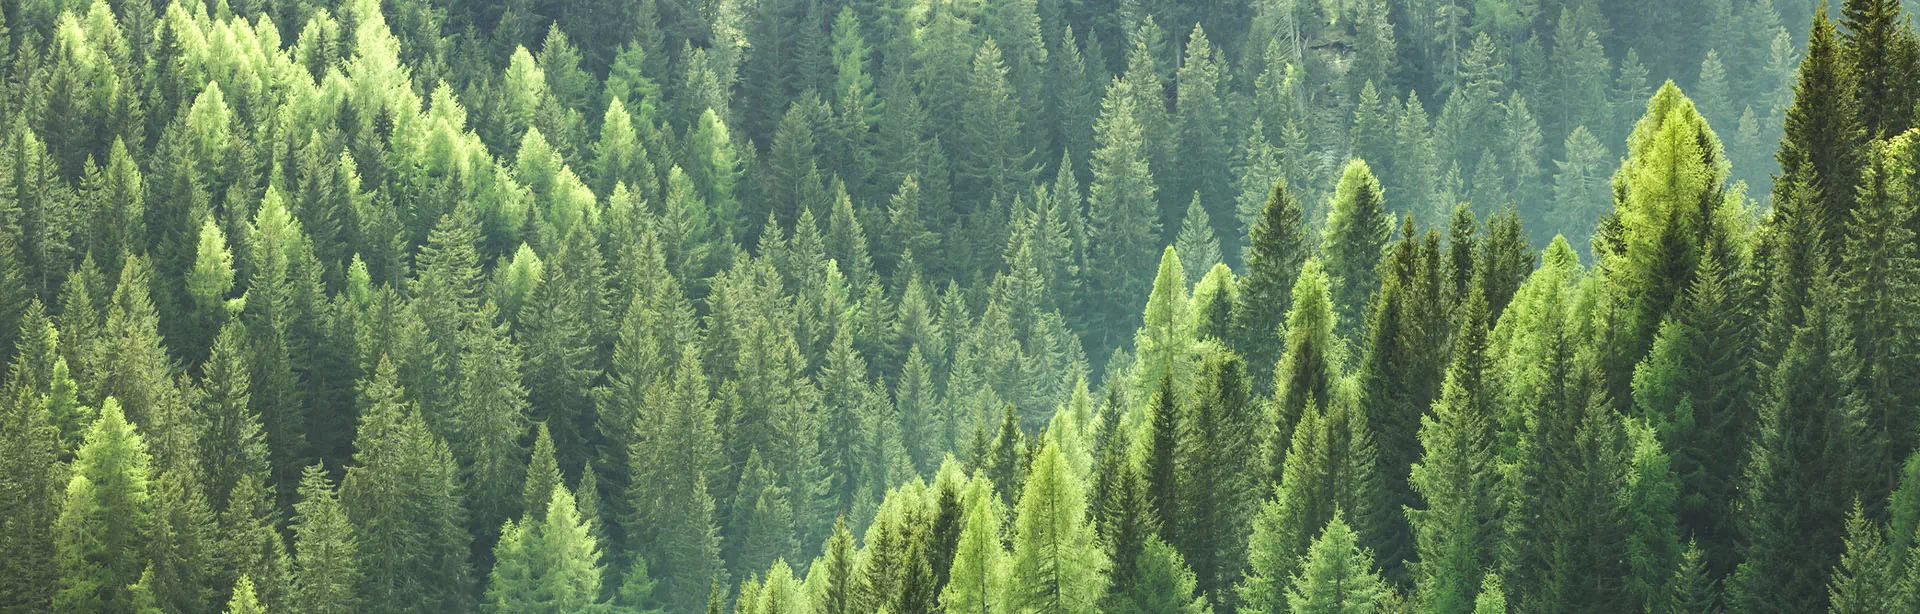 zielone drzewa w lesie